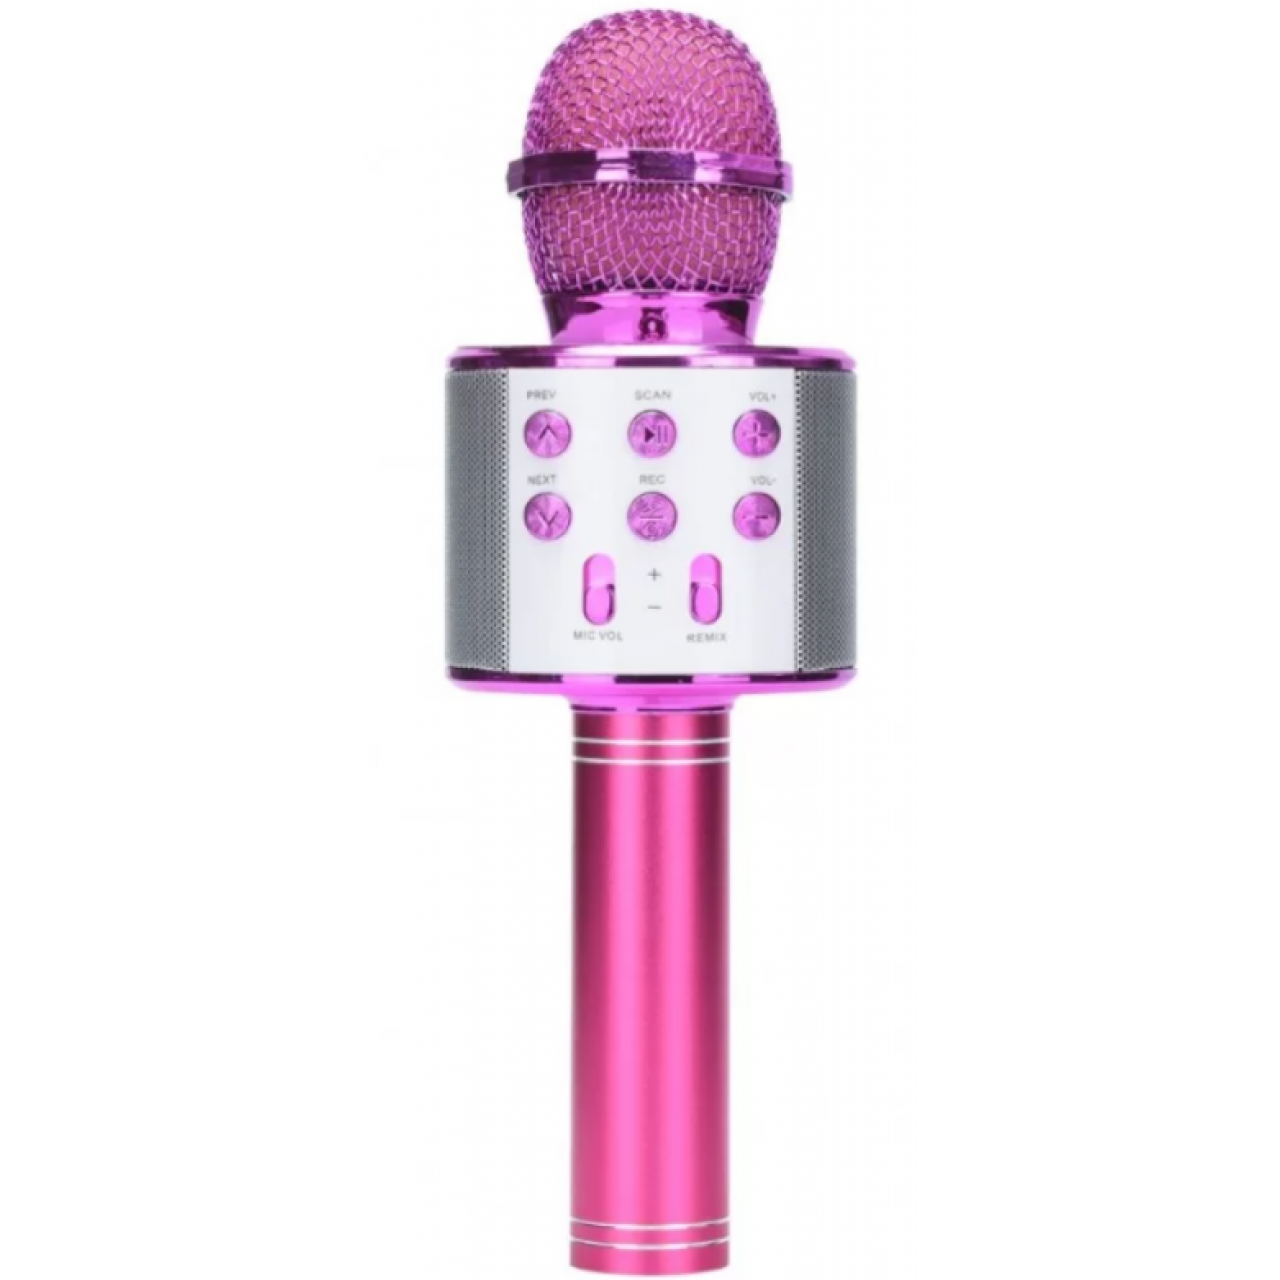 Ασύρματο Μικρόφωνο Bluetooth με Ενσωματωμένο Ηχείο και Karaoke WS-858 - Ροζ - 5793